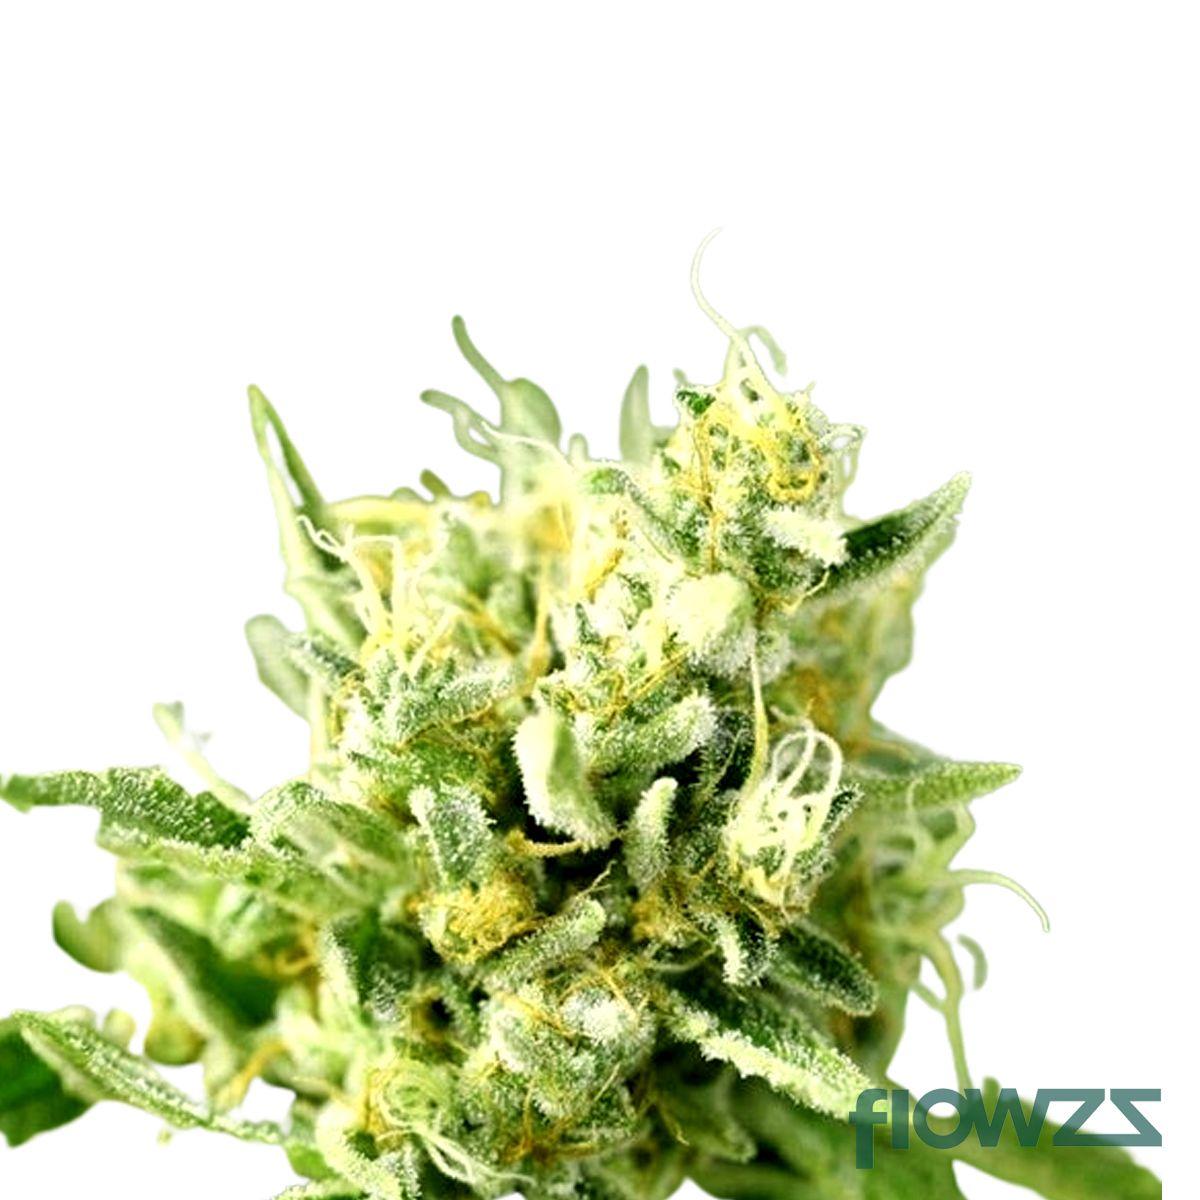 Sirius Cannabis Strain - flowzz.com Preisvergleich